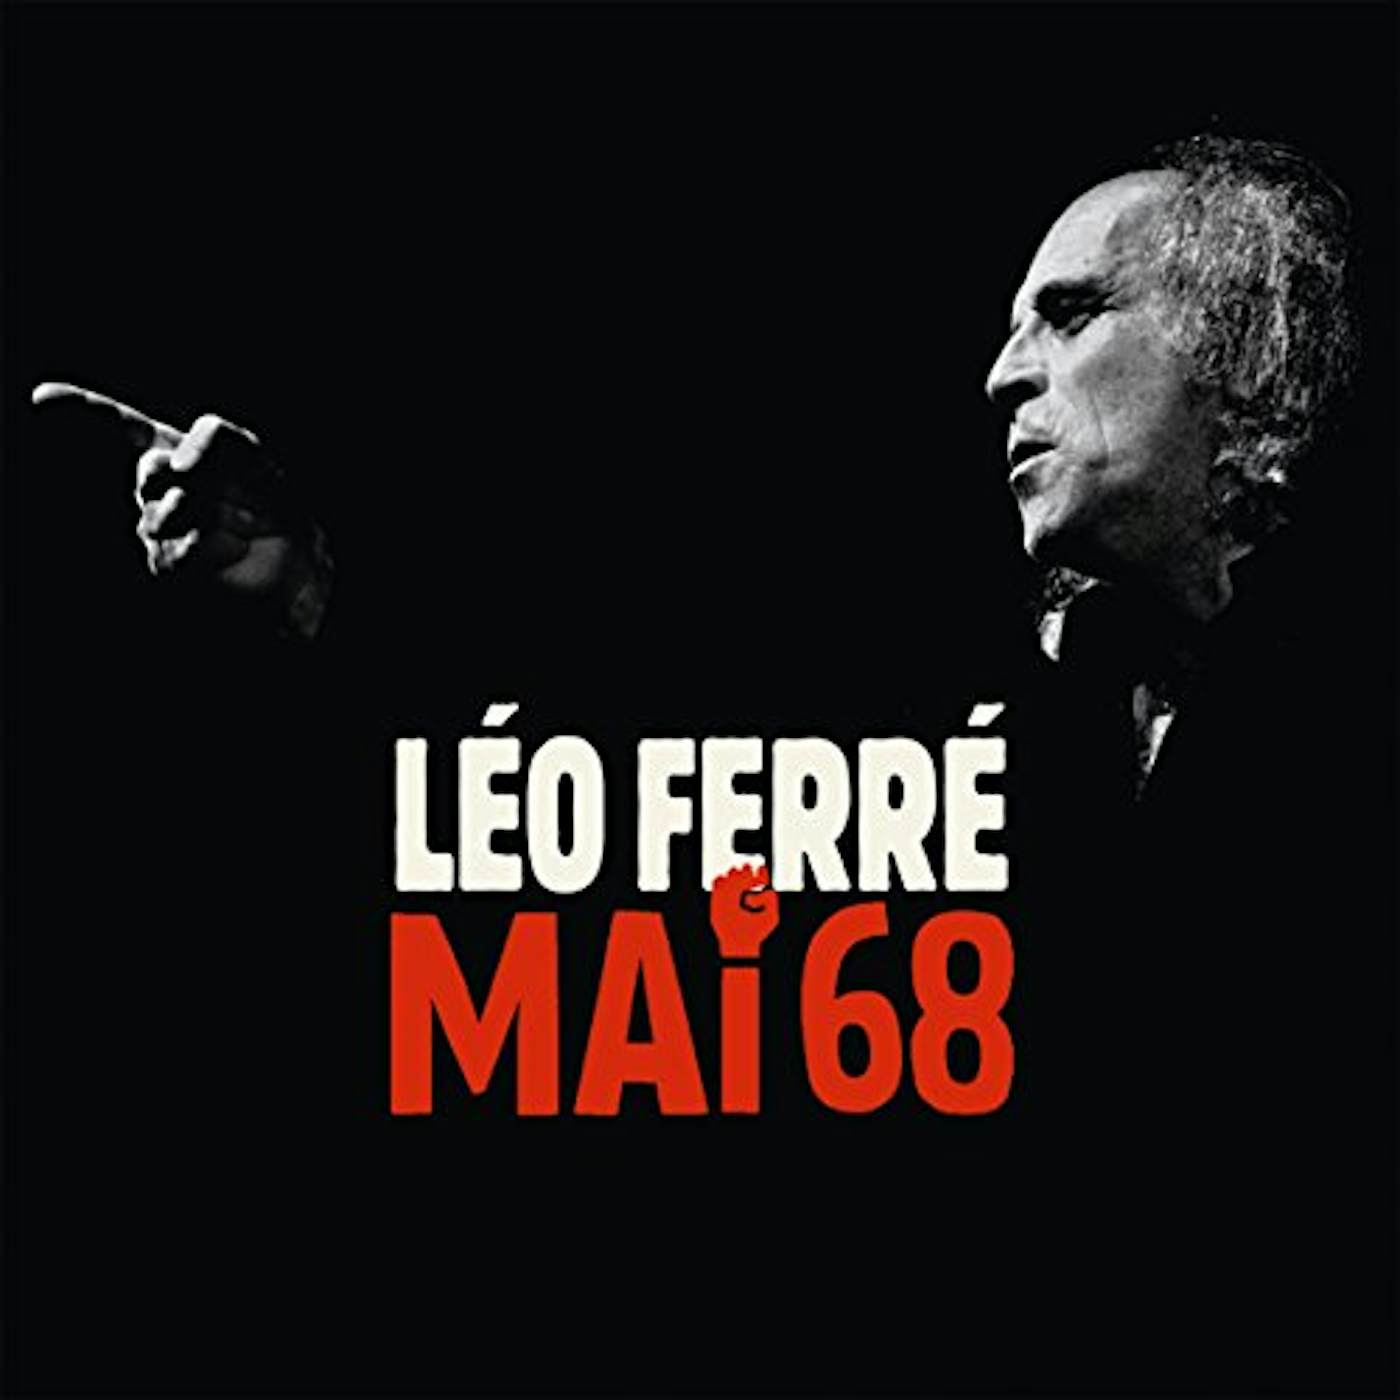 Léo Ferré MAI 1968 CD